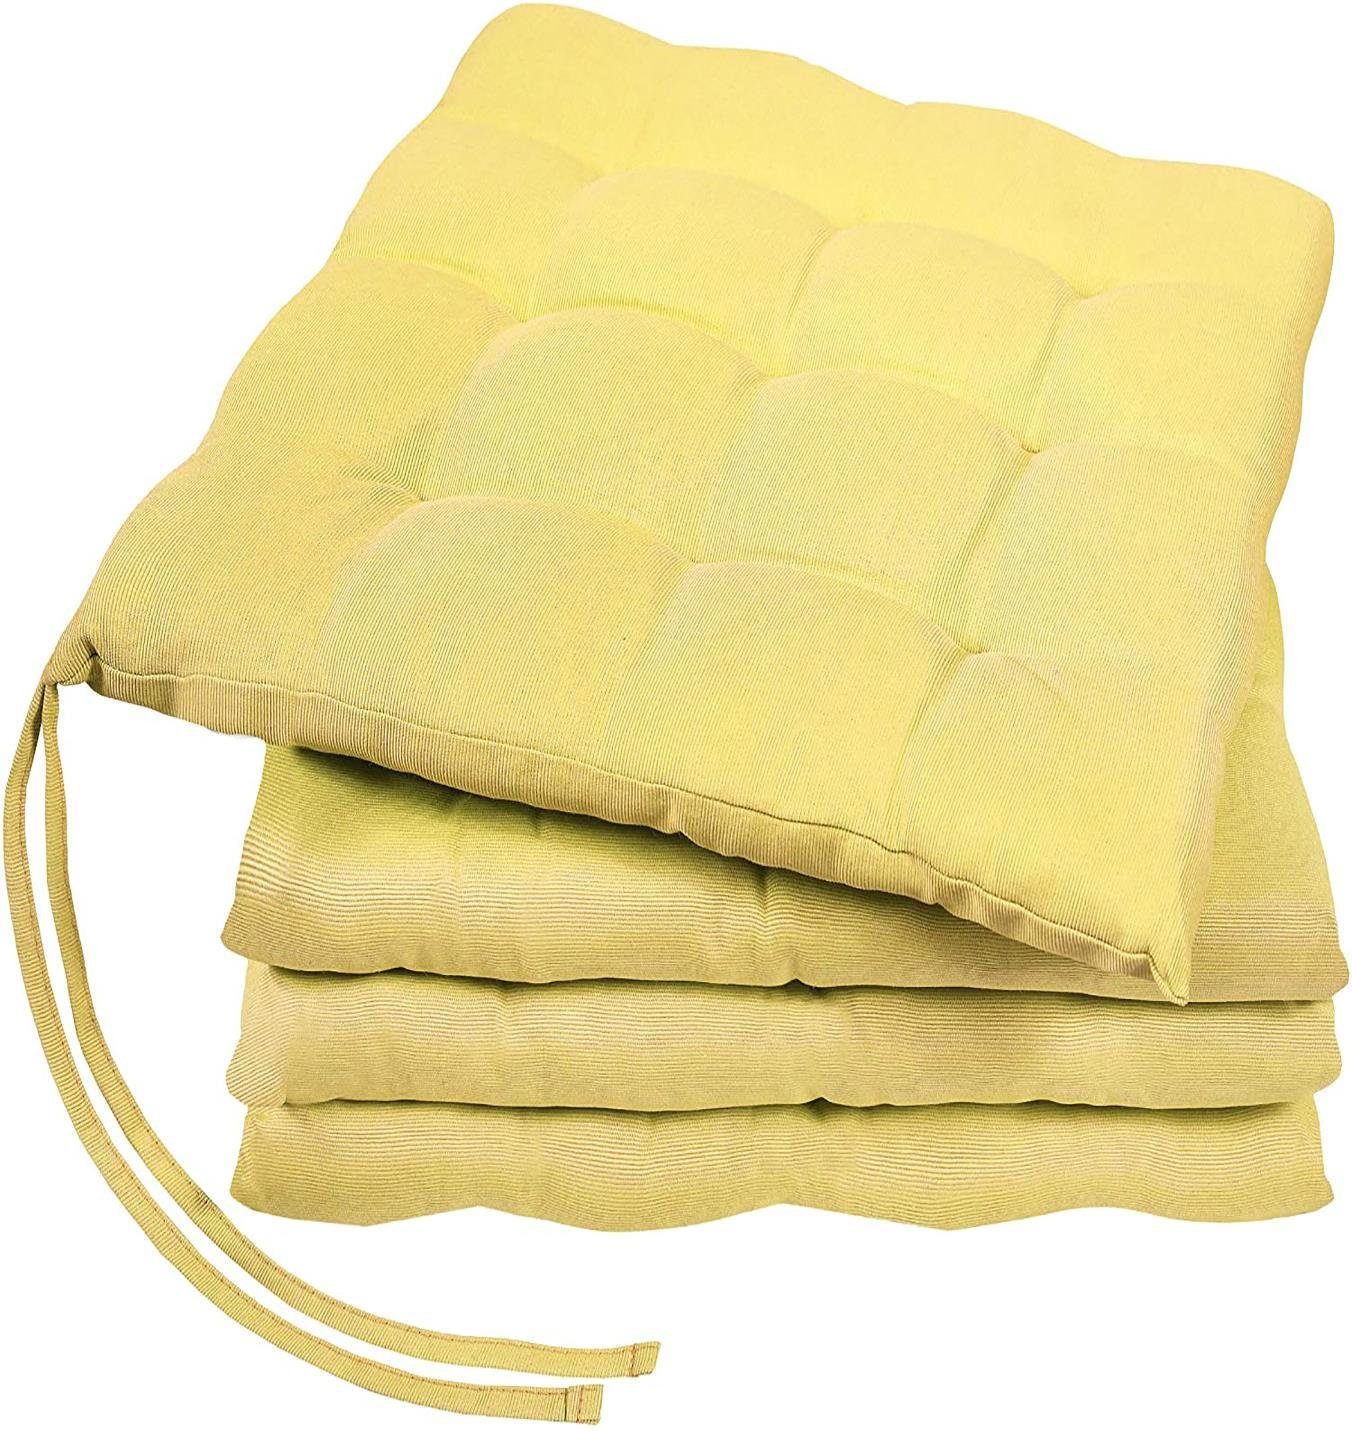 GREEN MARK Textilien Sitzkissen Innen, Gelb oder weich Sitzkissen, Stuhlkissen Außen für 40x40cm gefüllt